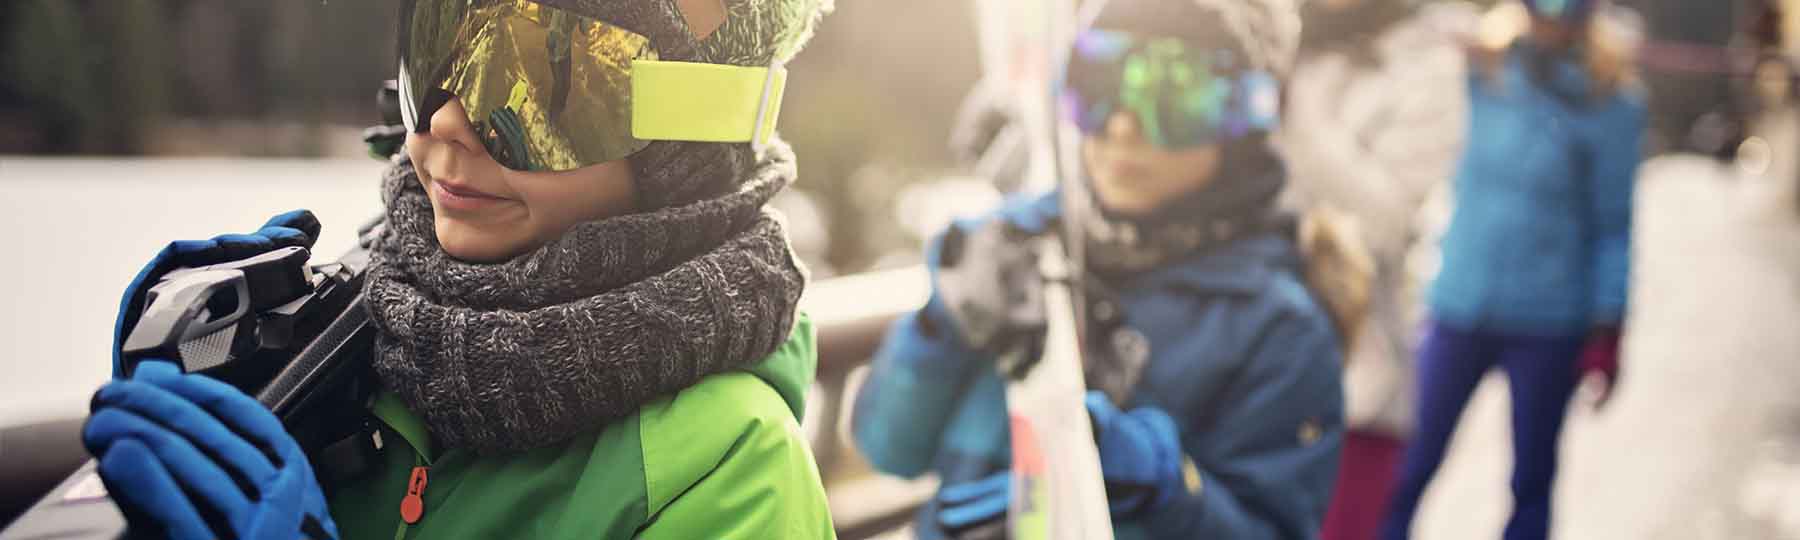 Family carrying skis to ski slope in ski resort. Sunny winter day. Nikon D850